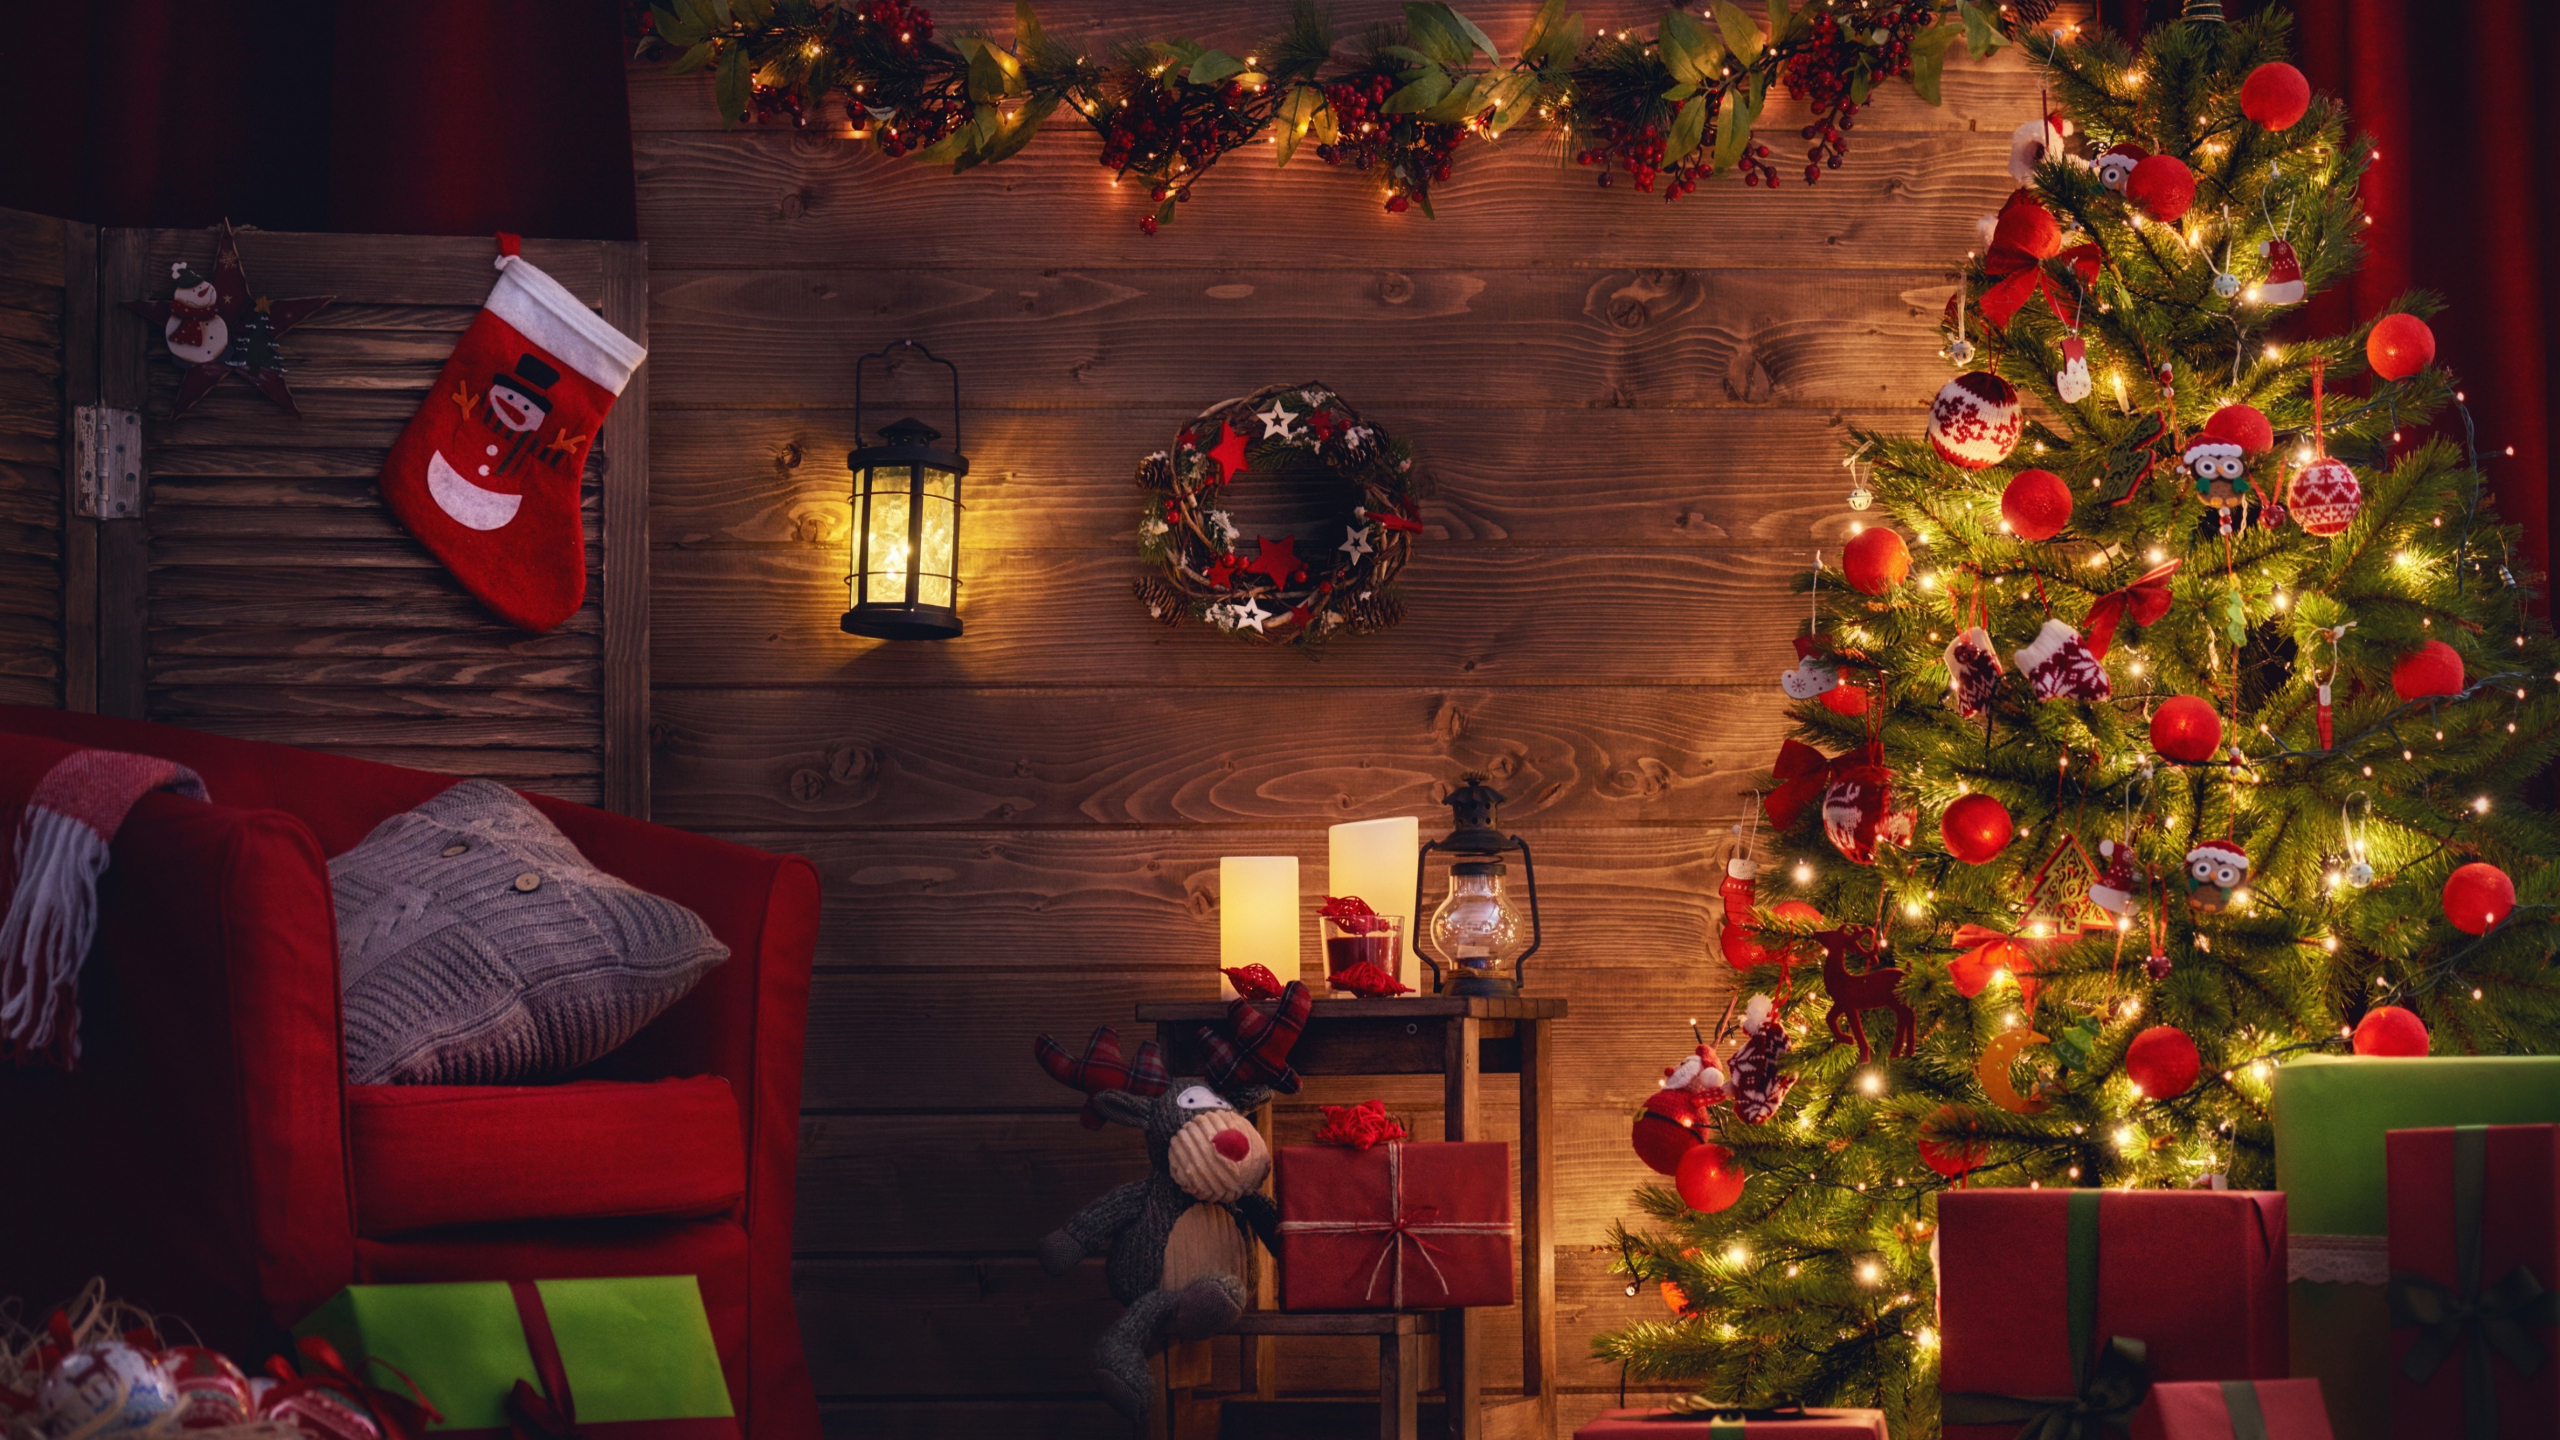 Hãy đắm mình trong không khí Noel sôi động với hình nền cây thông Giáng sinh 2560x1440 cực kỳ đẹp mắt tại màn hình máy tính của bạn. Hình nền này vừa tươi sáng, vừa sang trọng với những đường nét hoa văn chất lượng cao, sẽ làm cho không gian làm việc hoặc giải trí của bạn trở nên thật lung linh và ấm cúng.